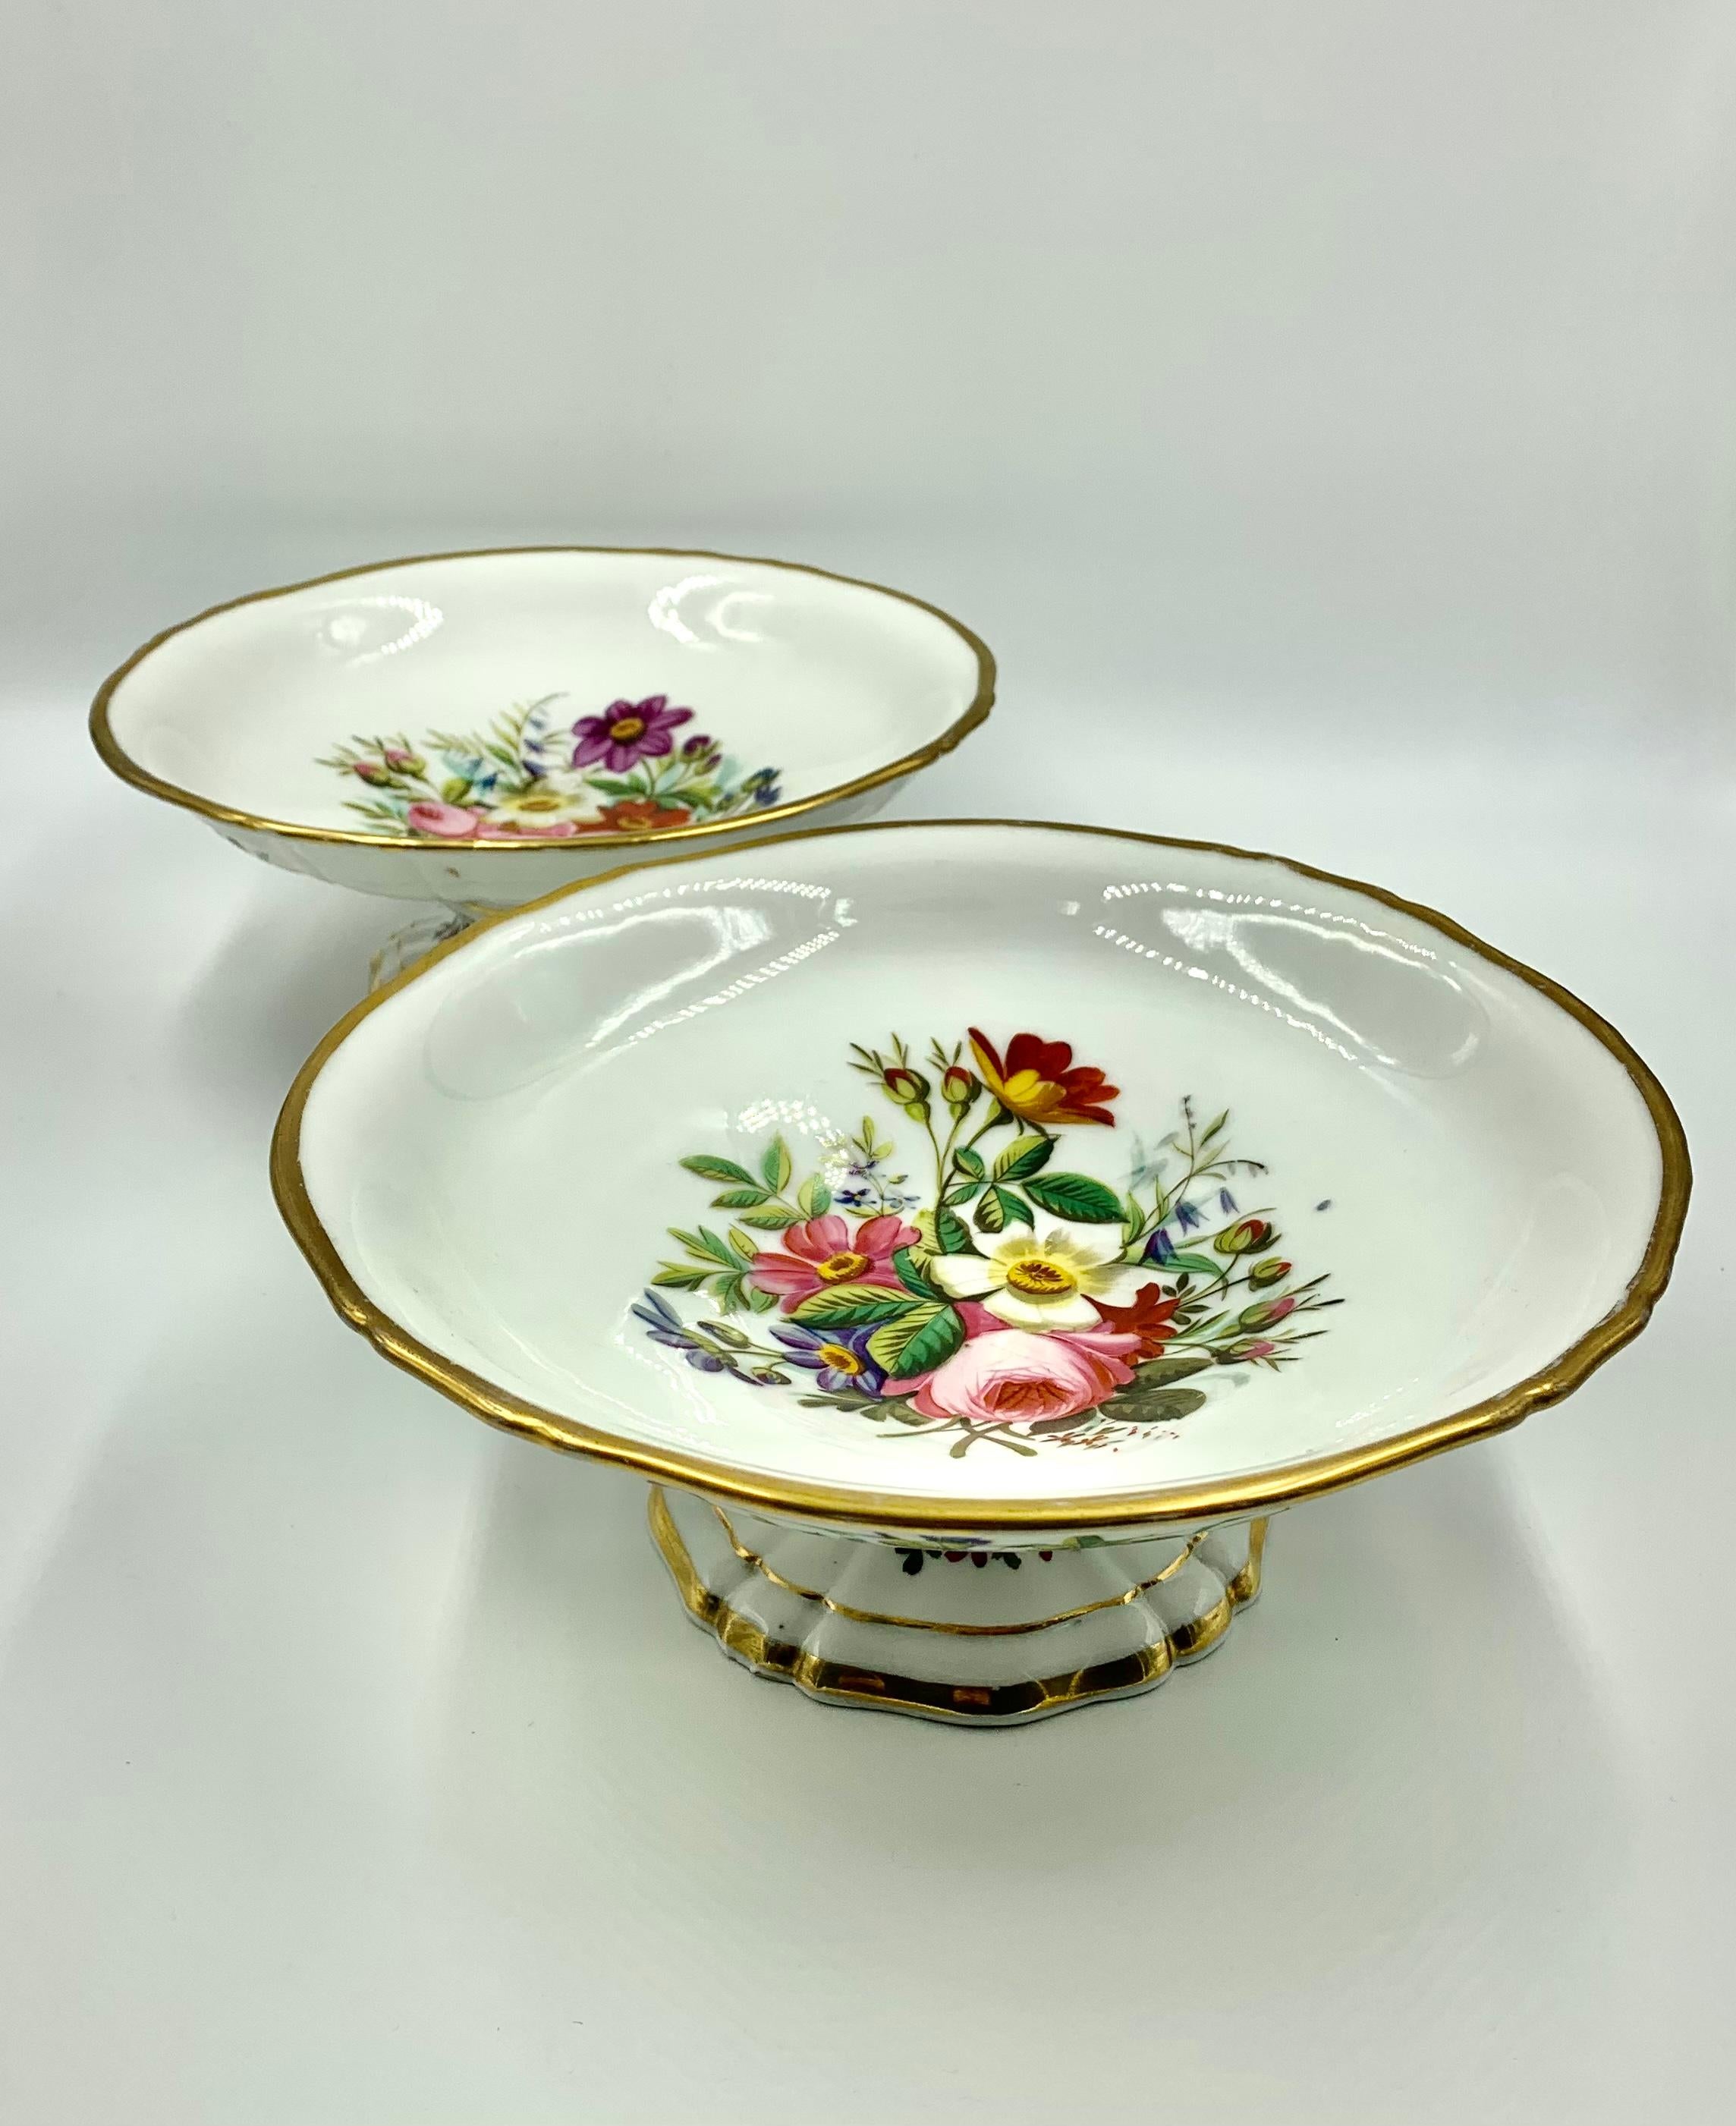 19th Century Antique Vieux Paris Porcelain Hand Painted Flower Motif Dessert Service for 8 For Sale